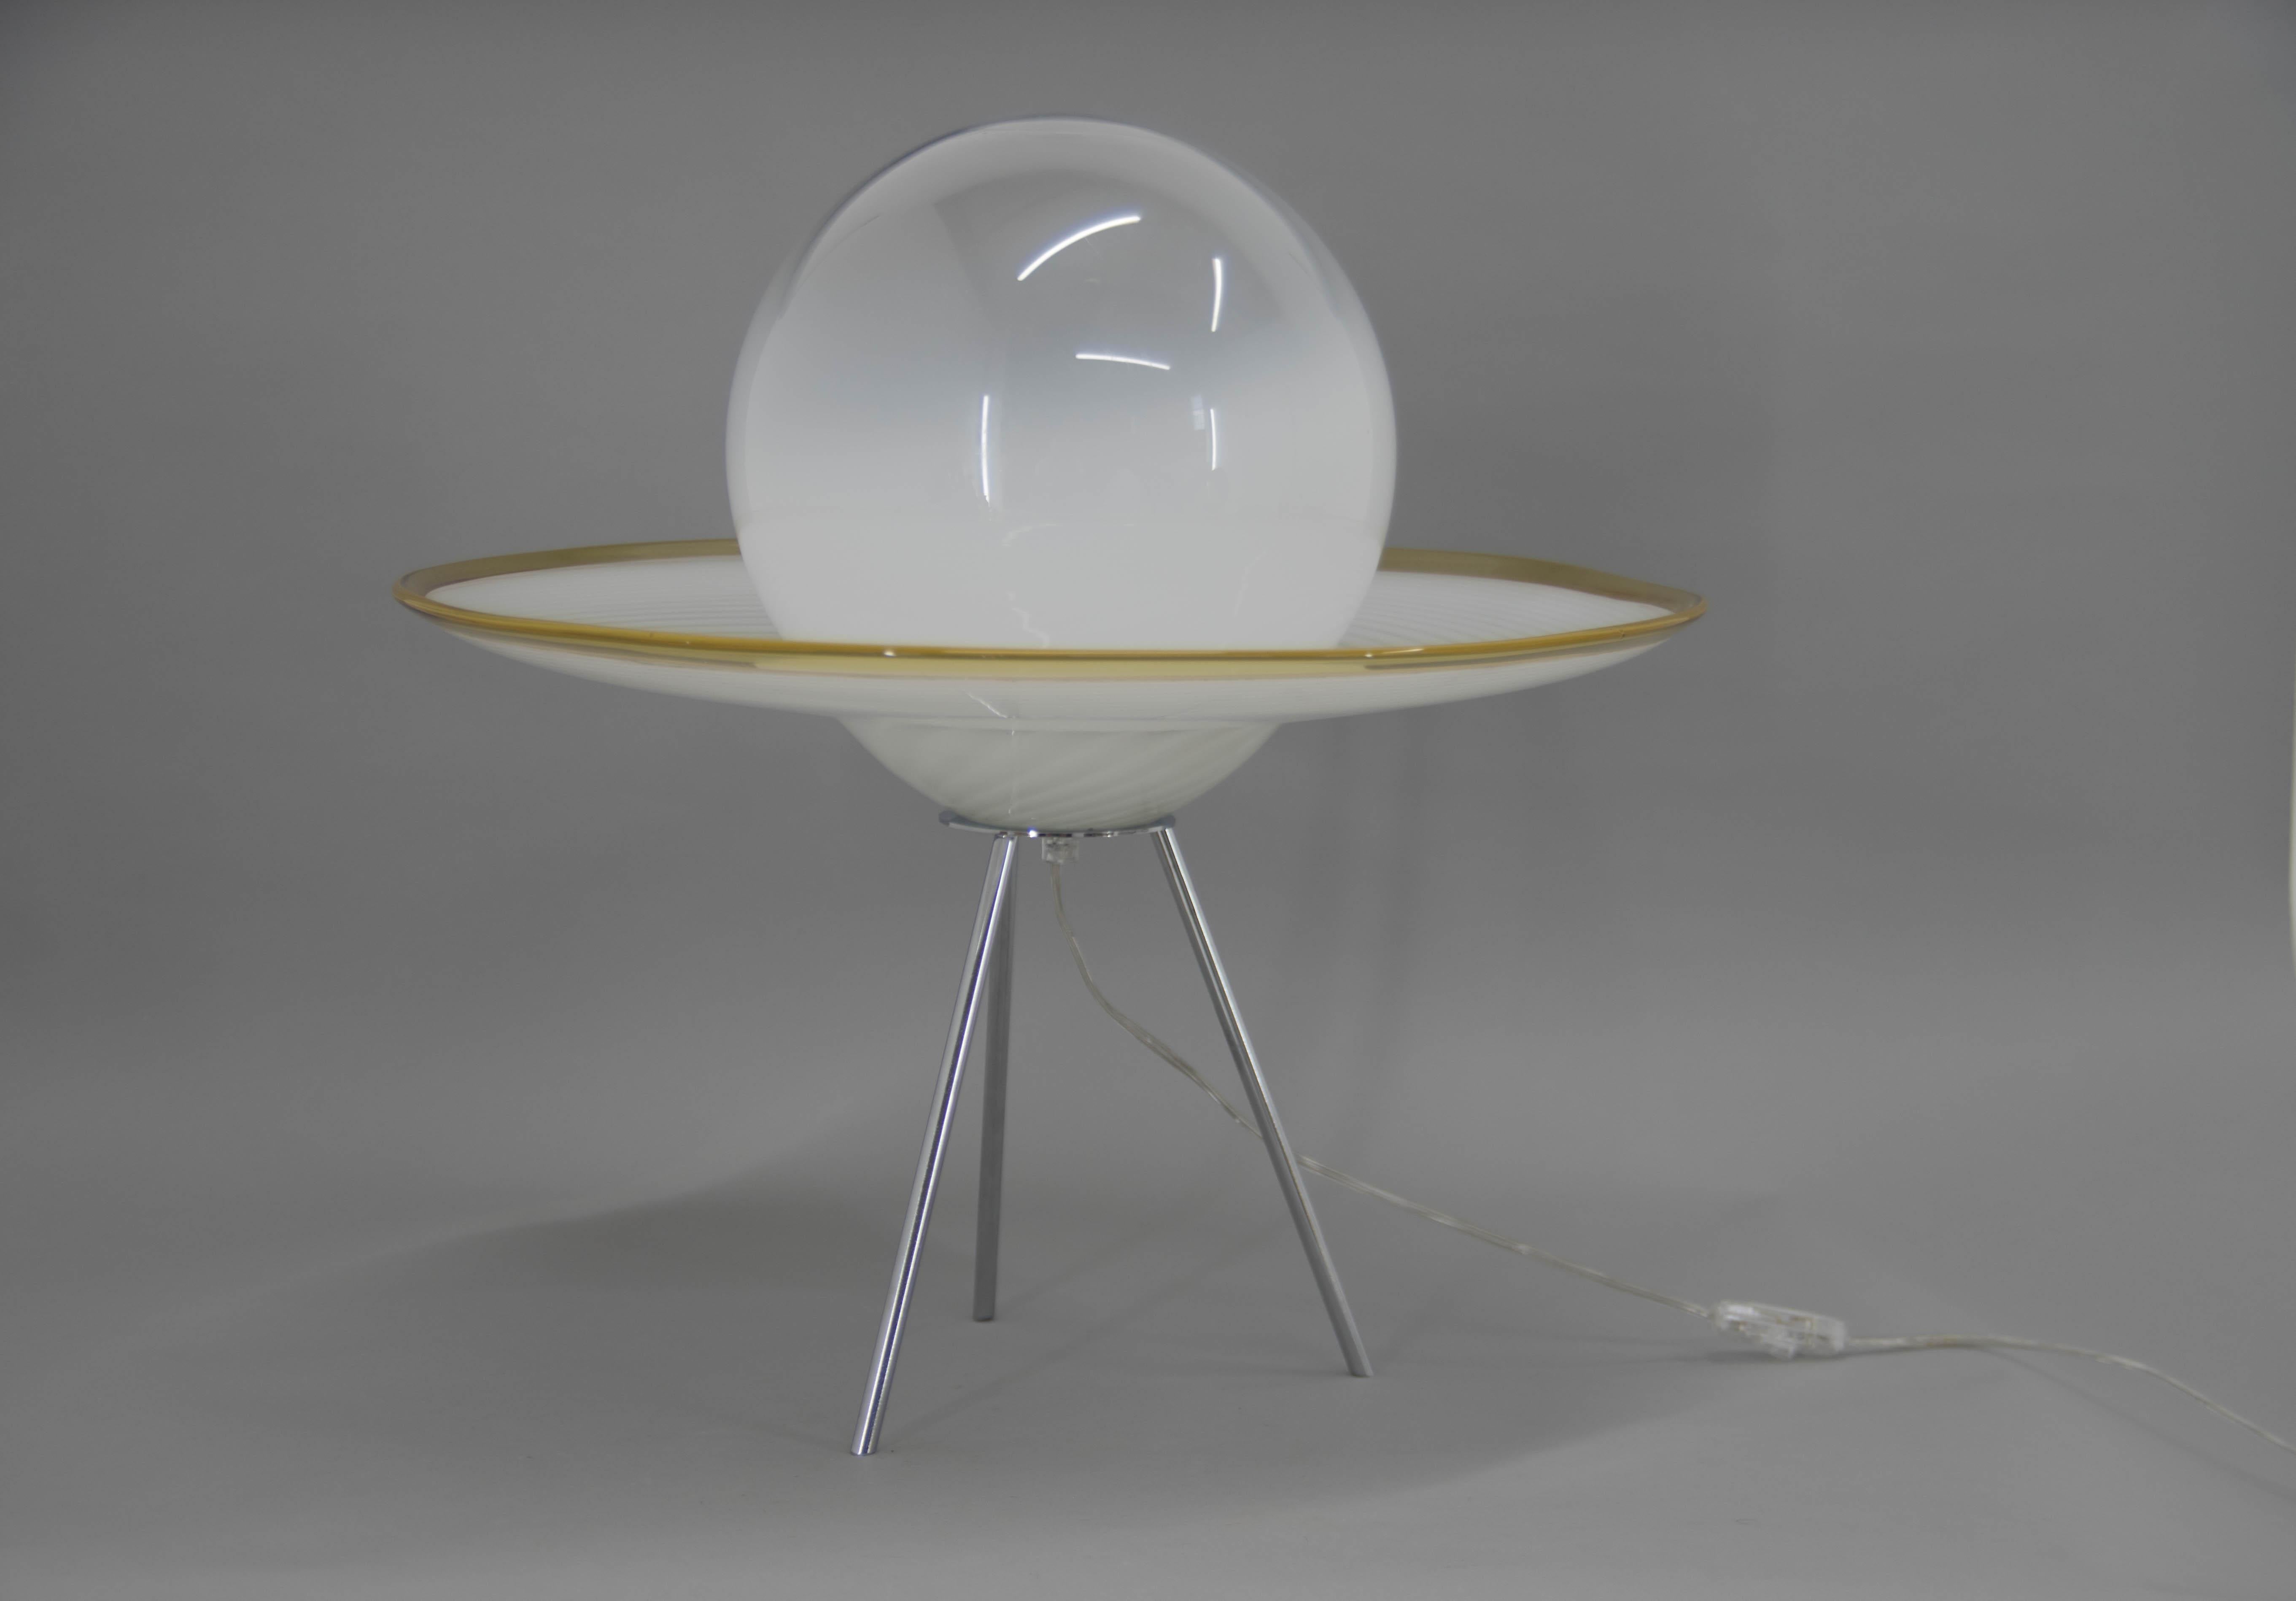 Lampe de table ou lampadaire moderne de style italien Murano en forme de Saturne.
Très bon état d'origine.
1x60W, ampoule E25-E27
Adaptateur pour prise américaine inclus.